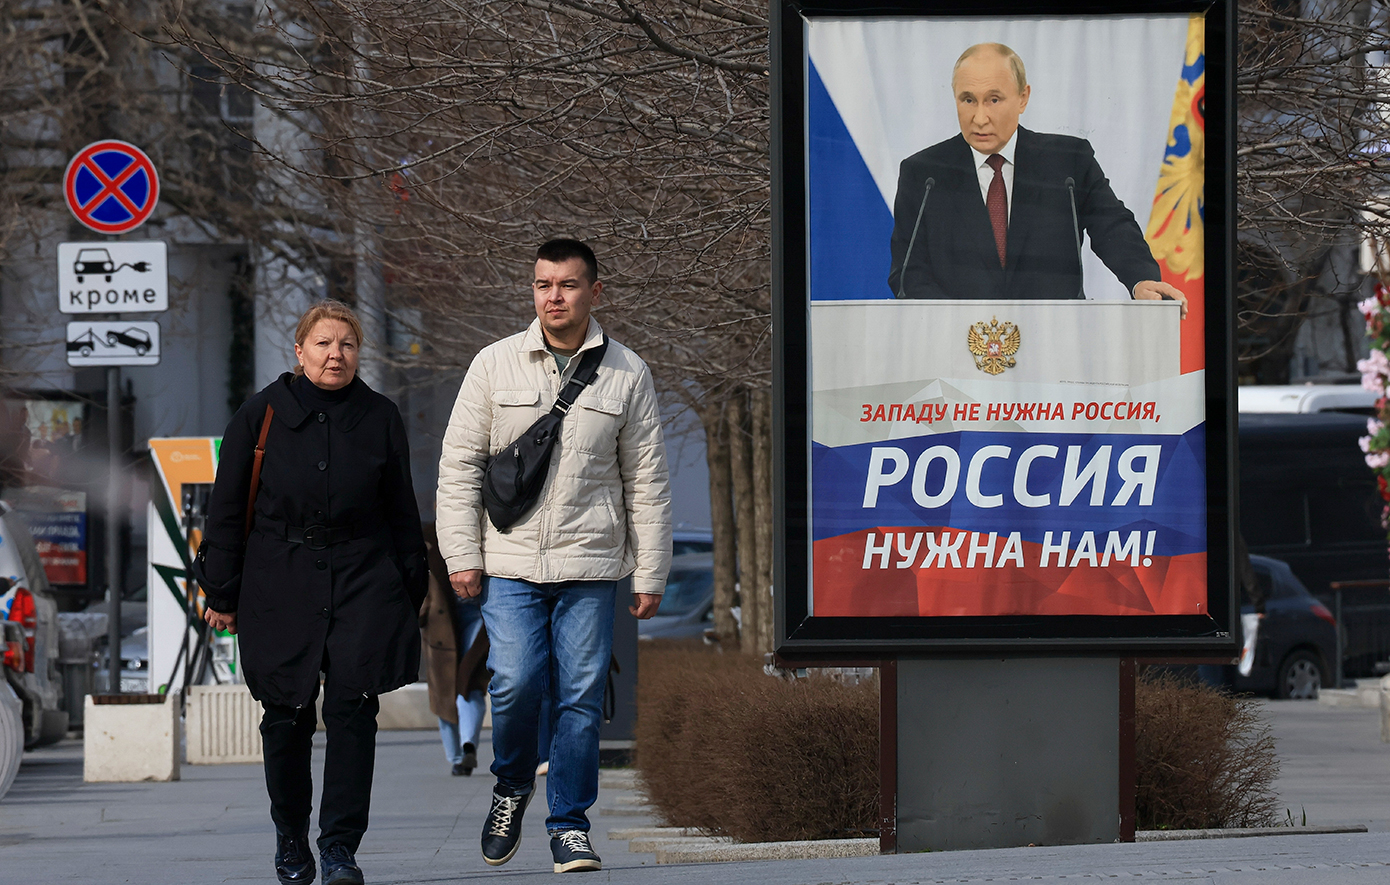 Για την ΕΕ και το ΝΑΤΟ, οι προεδρικές εκλογές στη Ρωσία δεν είναι «ούτε ελεύθερες ούτε δίκαιες»